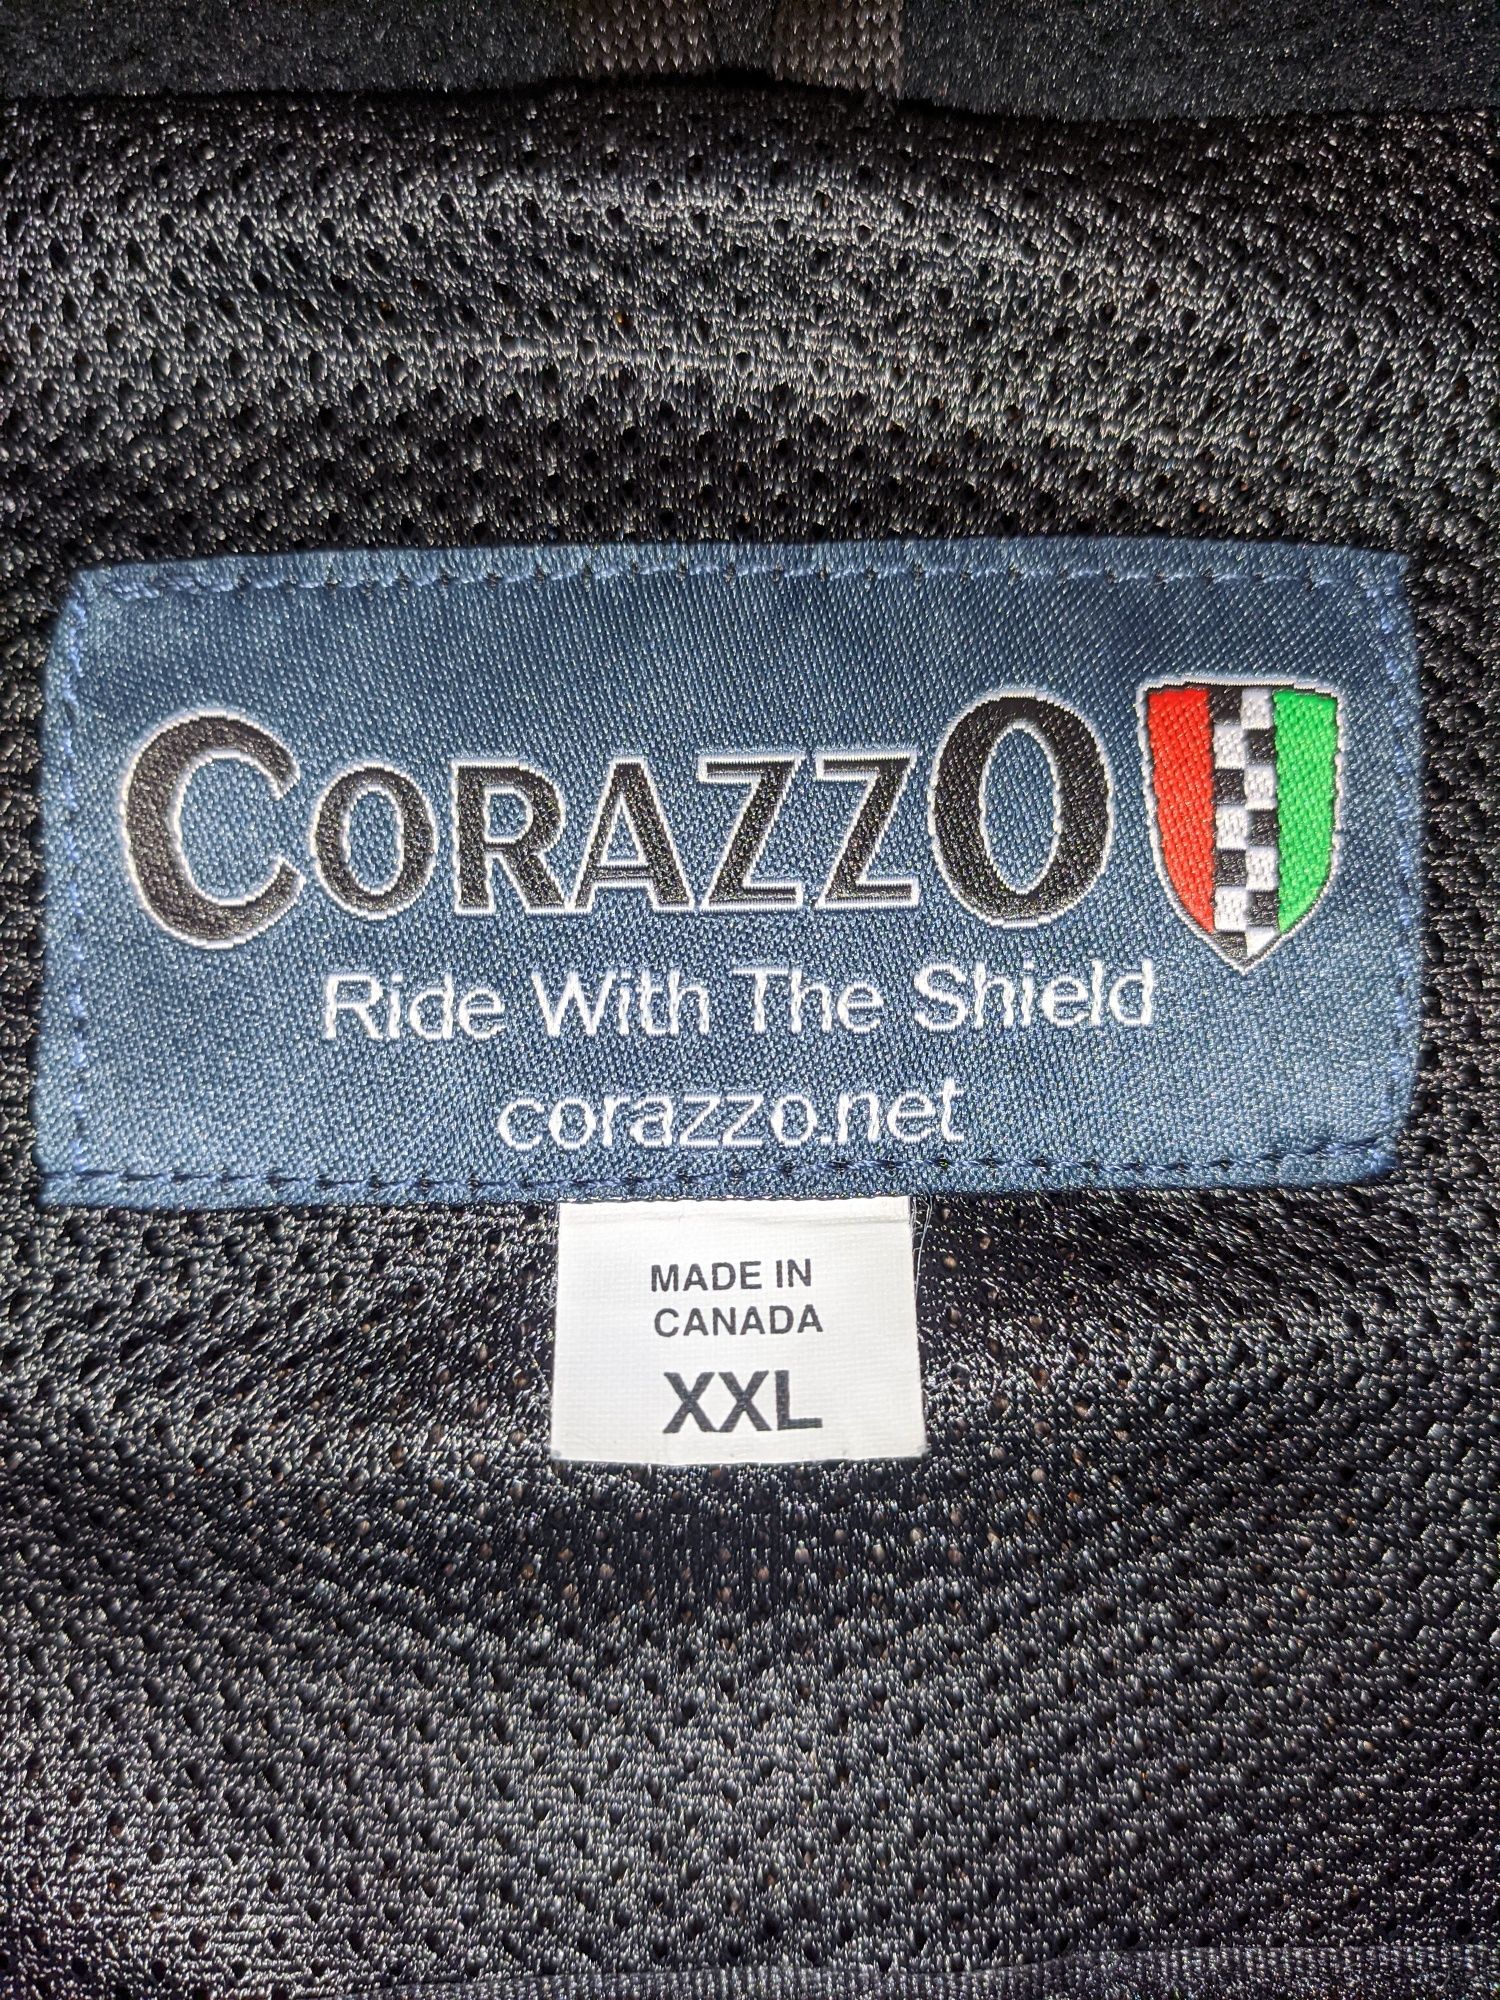 Kurtka Zbroja ochraniacz buzer na motocykl skuter XXL Corazzo